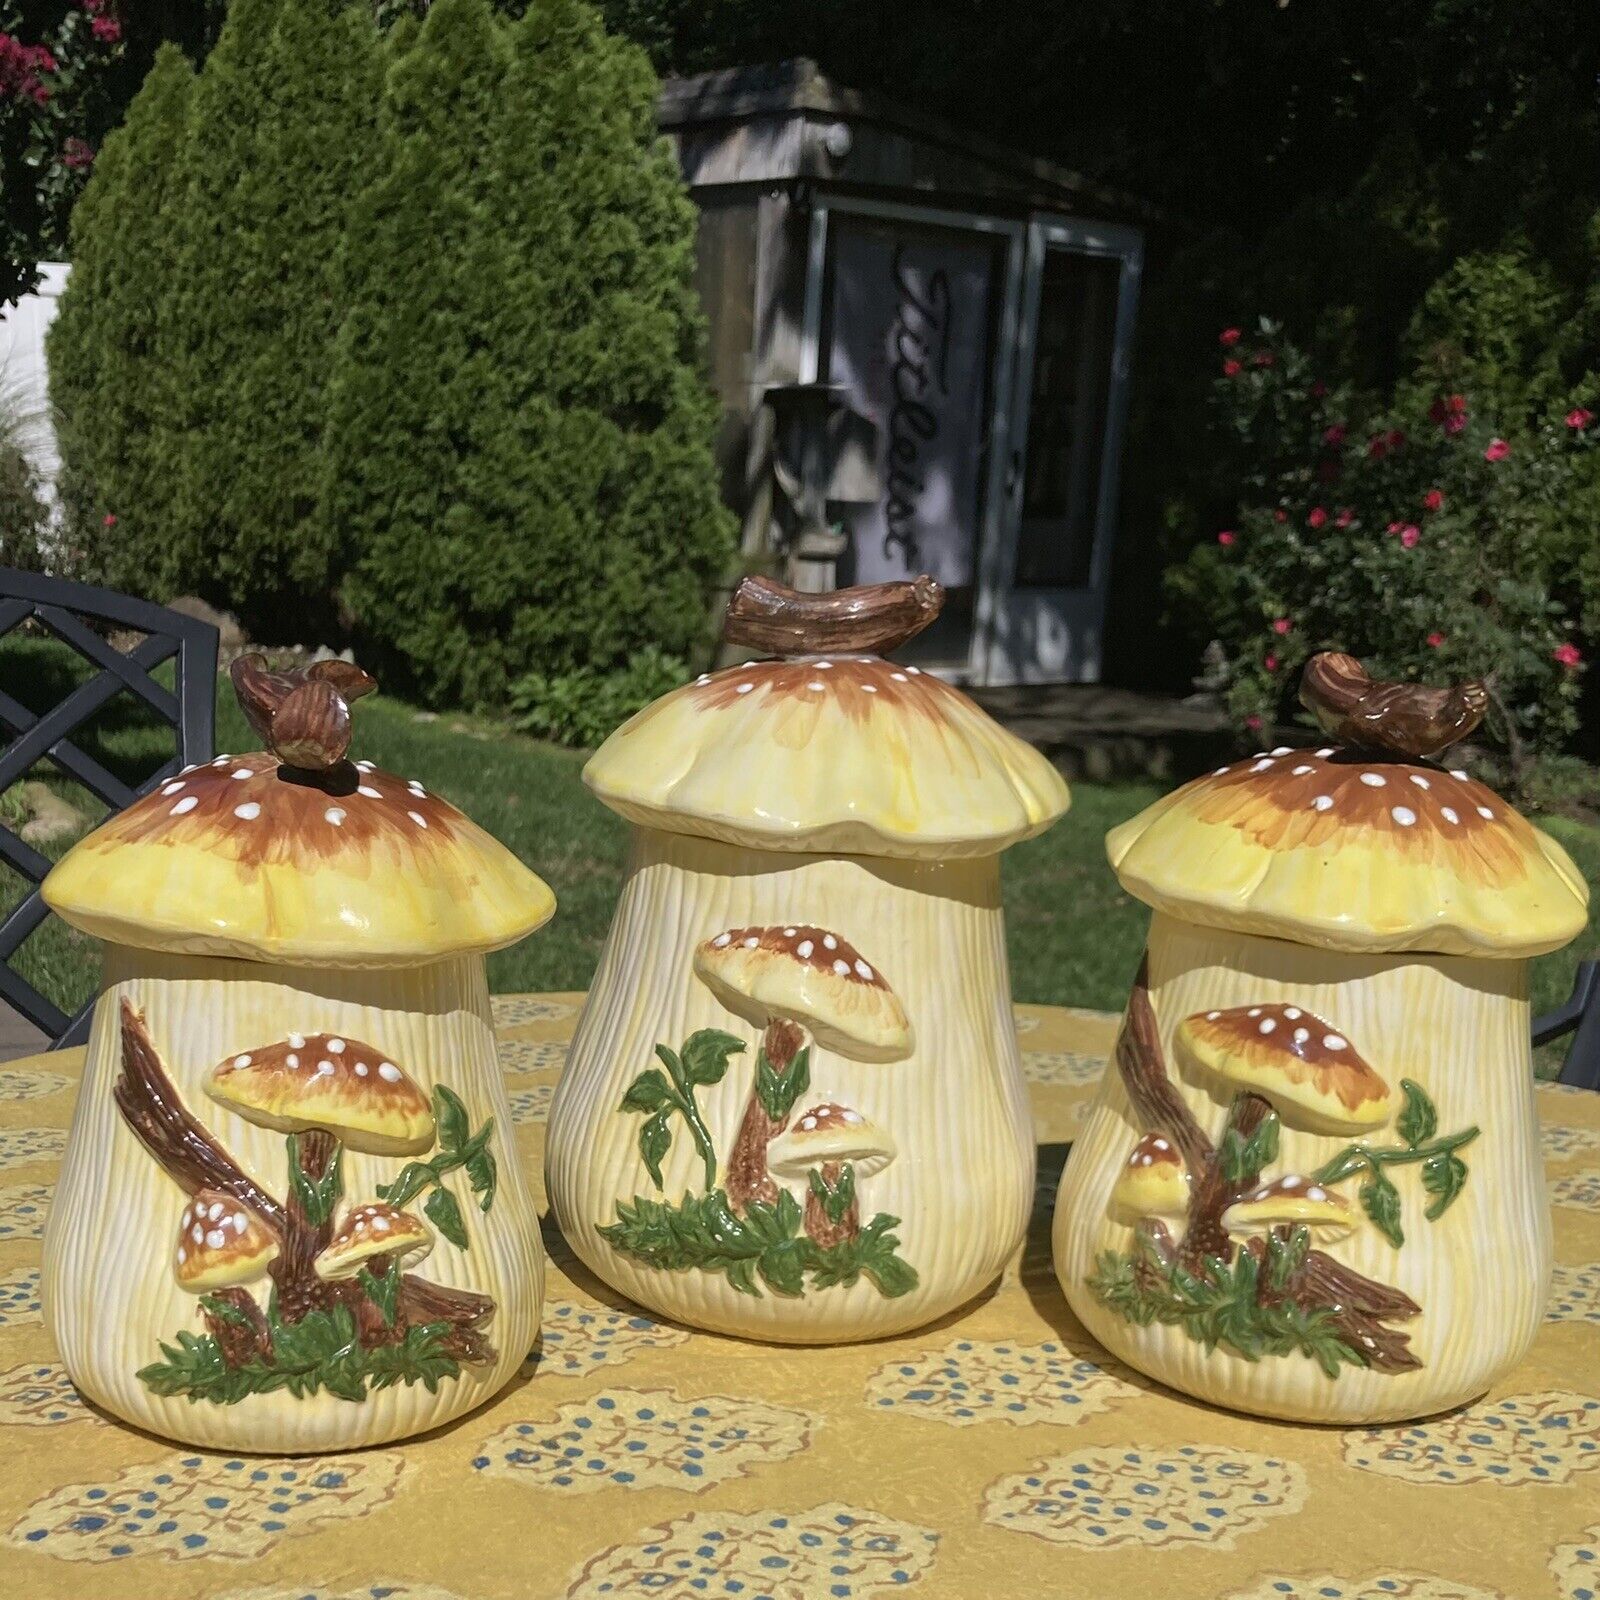 Vintage MCM retro 1977 unique yellow ceramic mushroom trio kitchen canister set